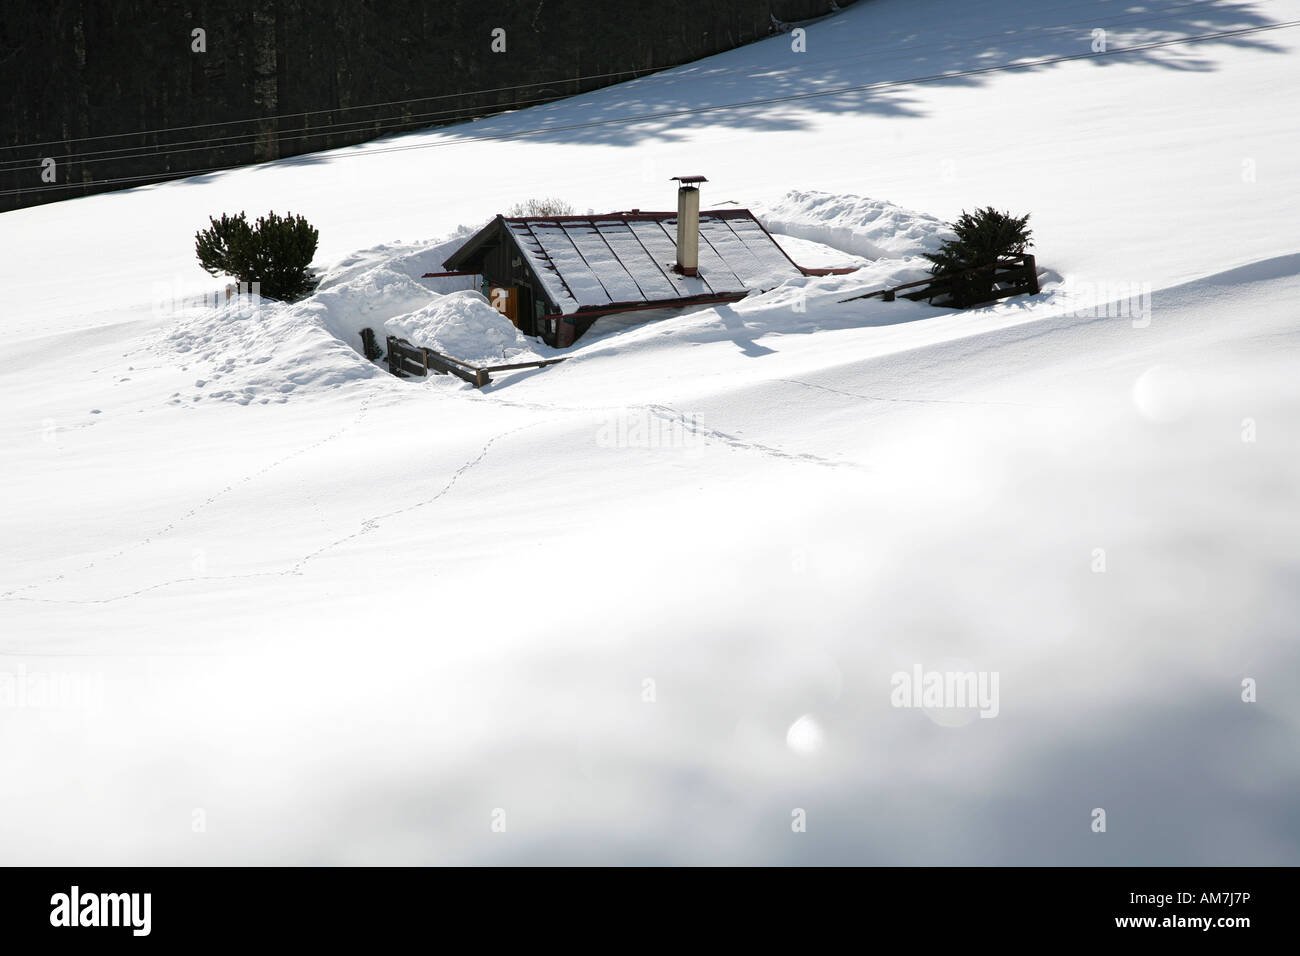 Snowed in mountain hut Stock Photo